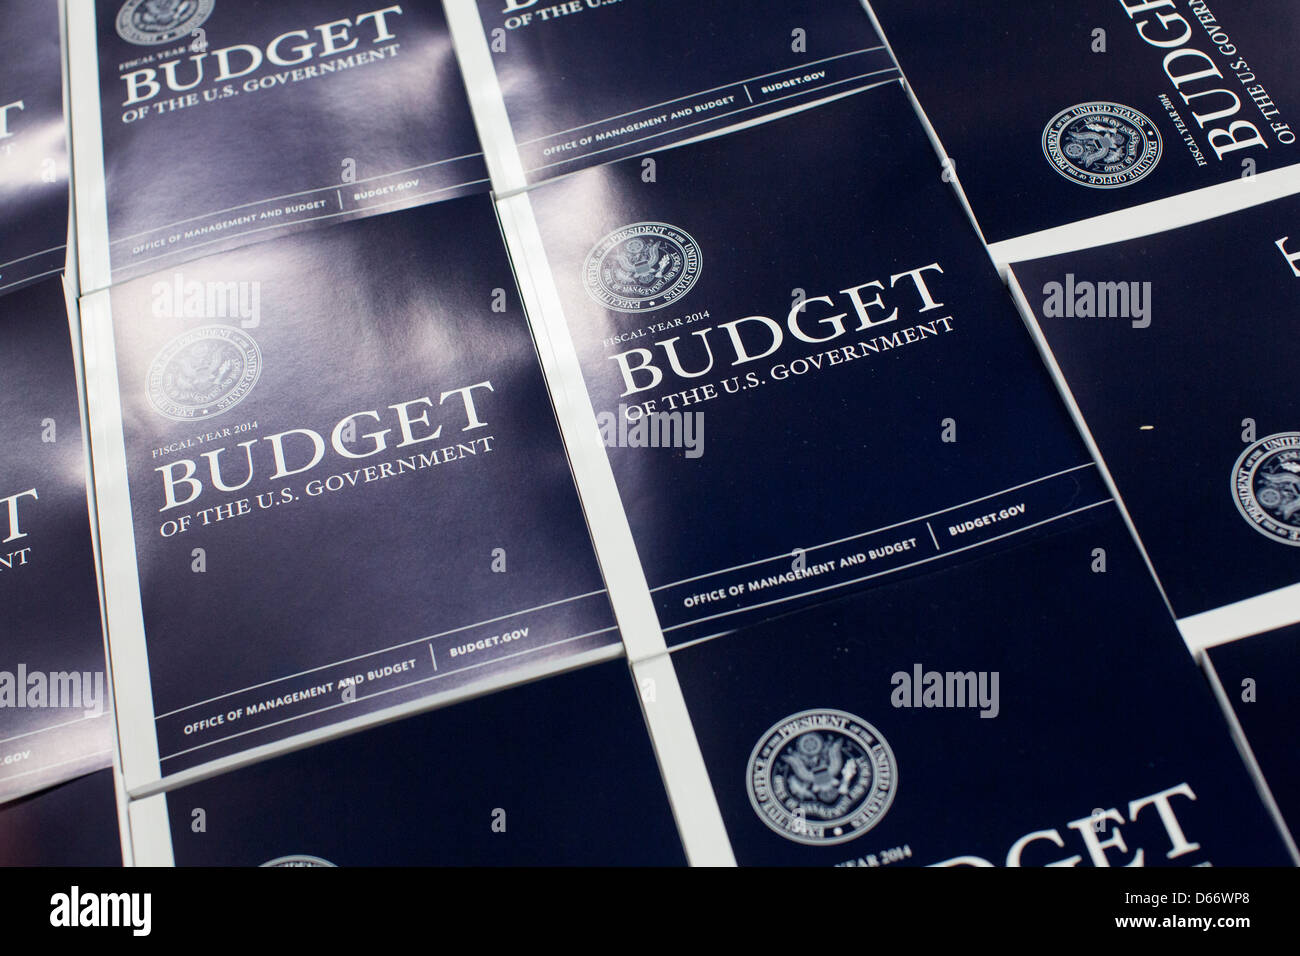 Kopien des Geschäftsjahrs 2014 Bundeshaushalt sind die Government Printing Office gebunden. Stockfoto